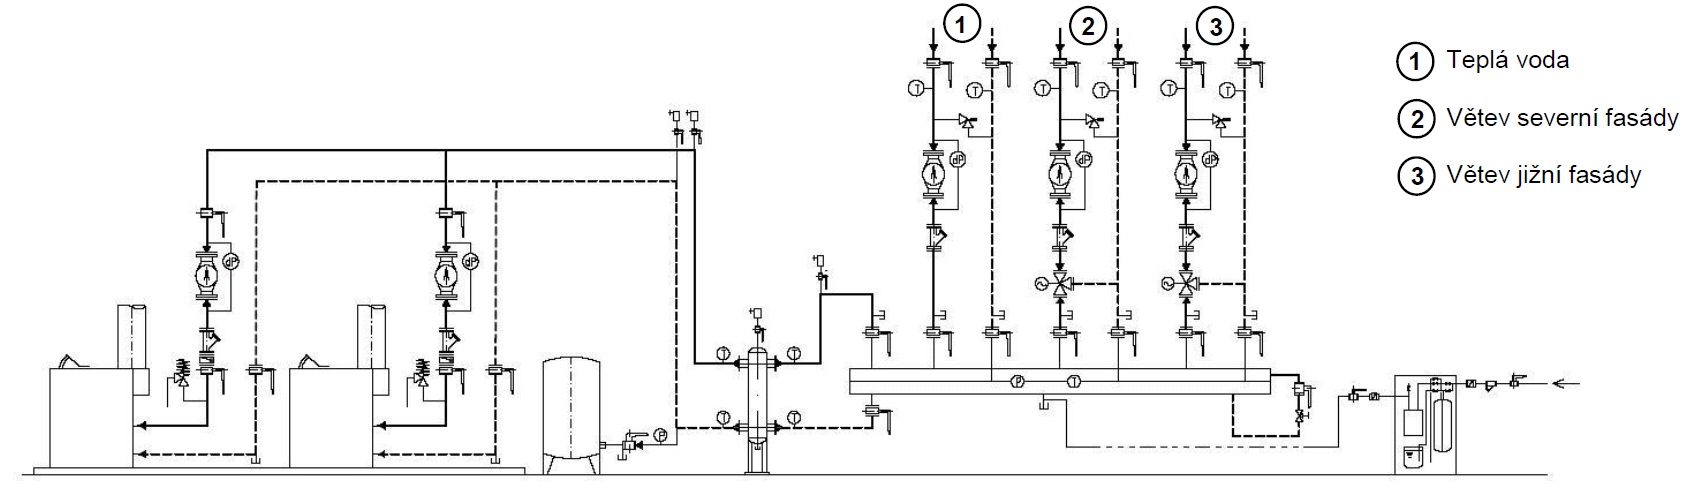 Schéma plynové kotelny